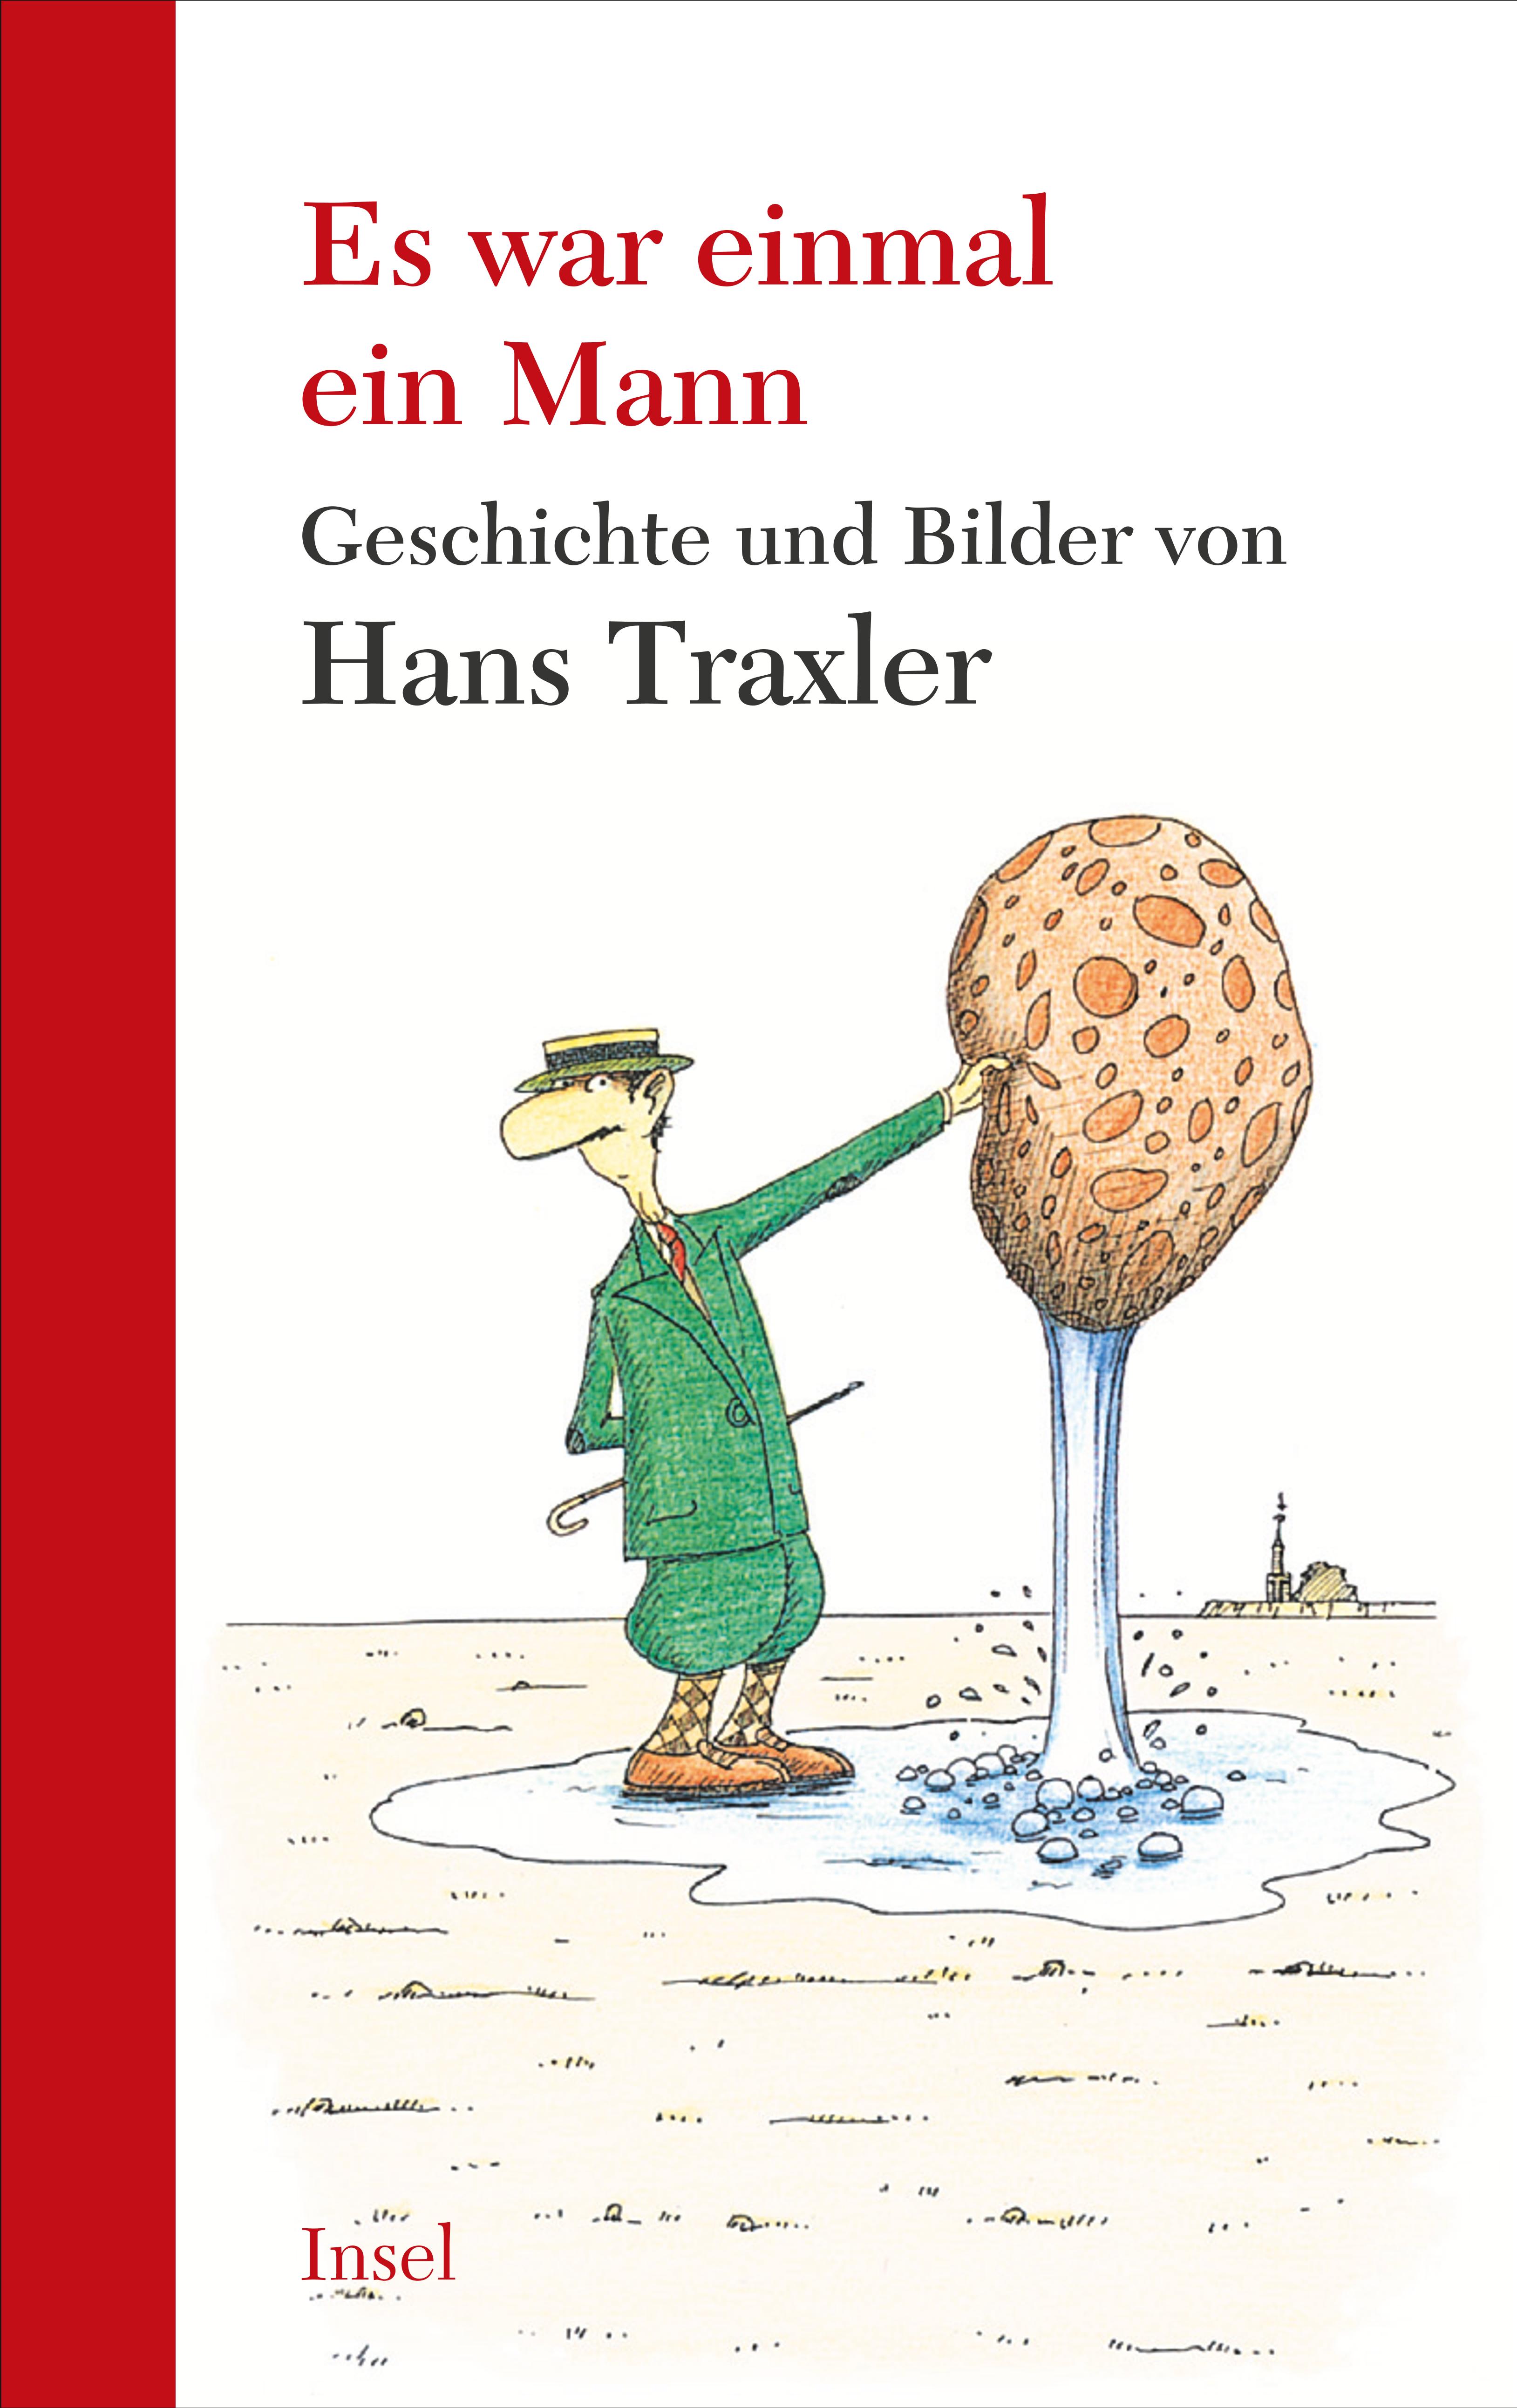 Es war einmal ein Mann. Buch von Hans Traxler (Insel Verlag)